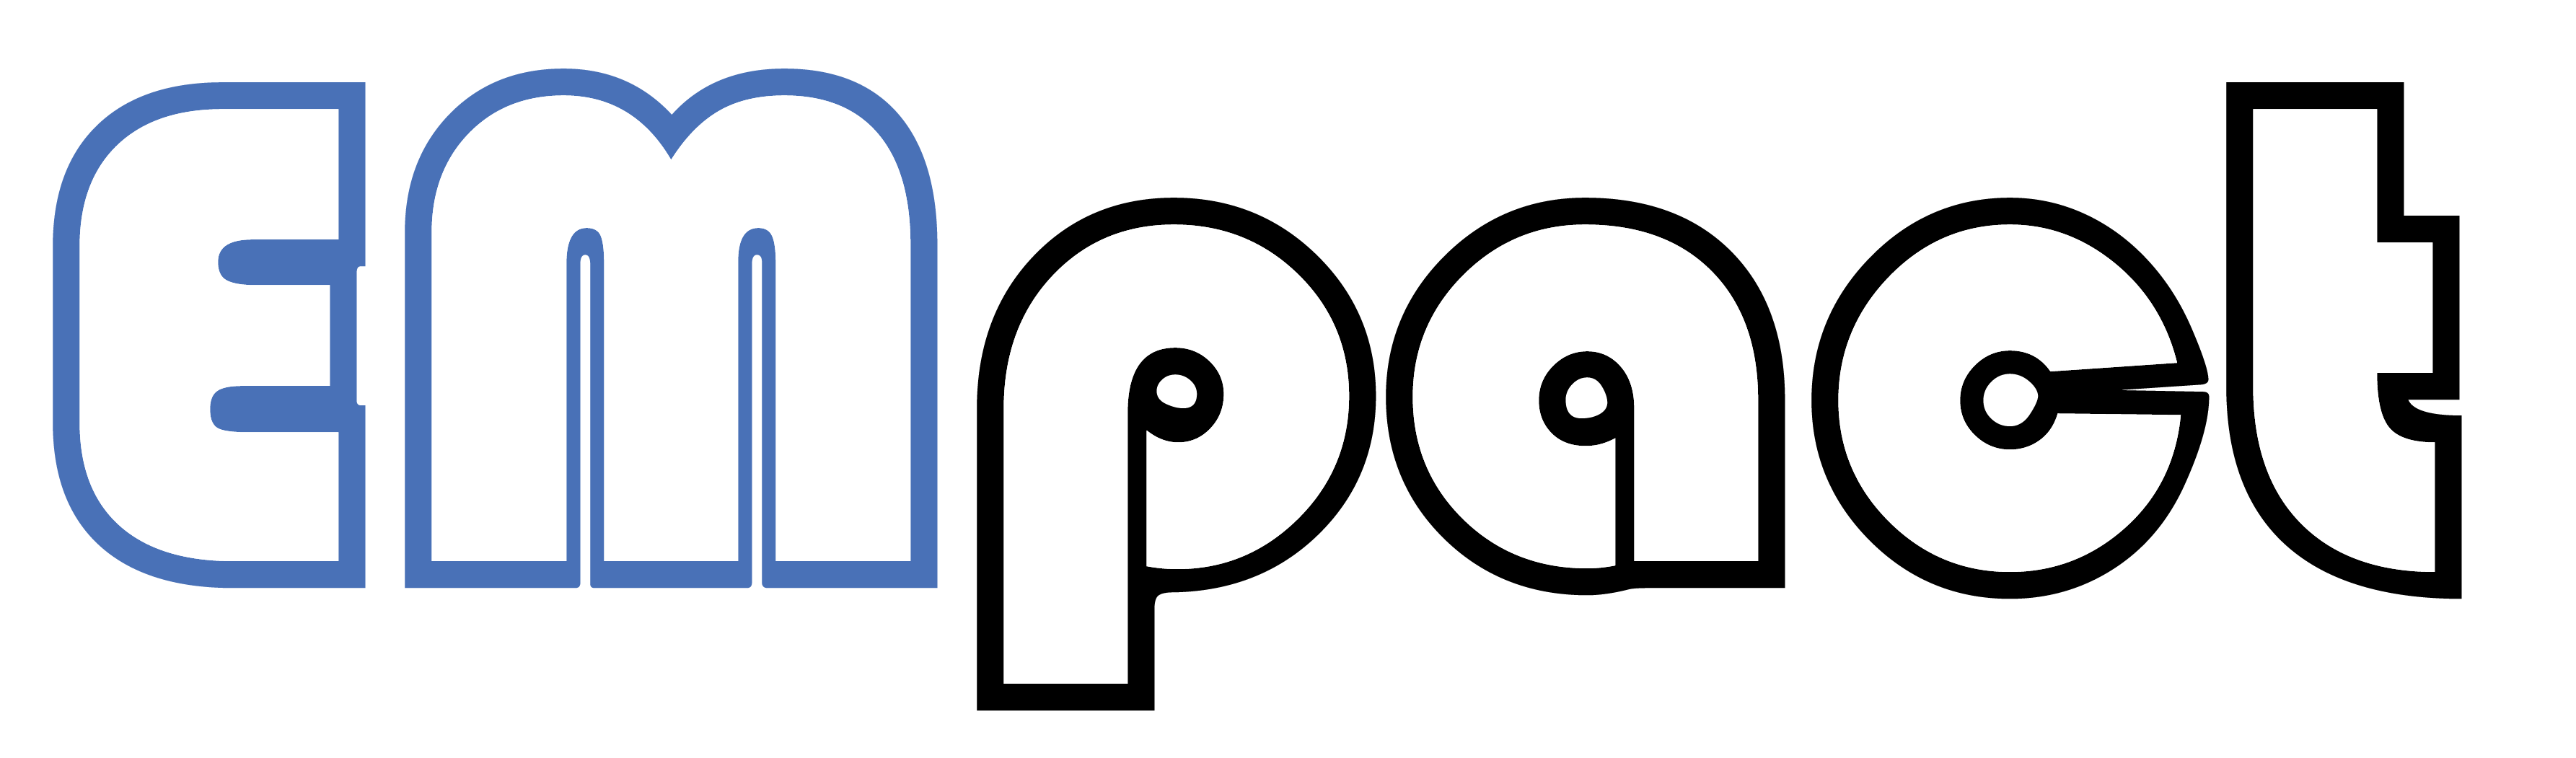 EMpact-logo